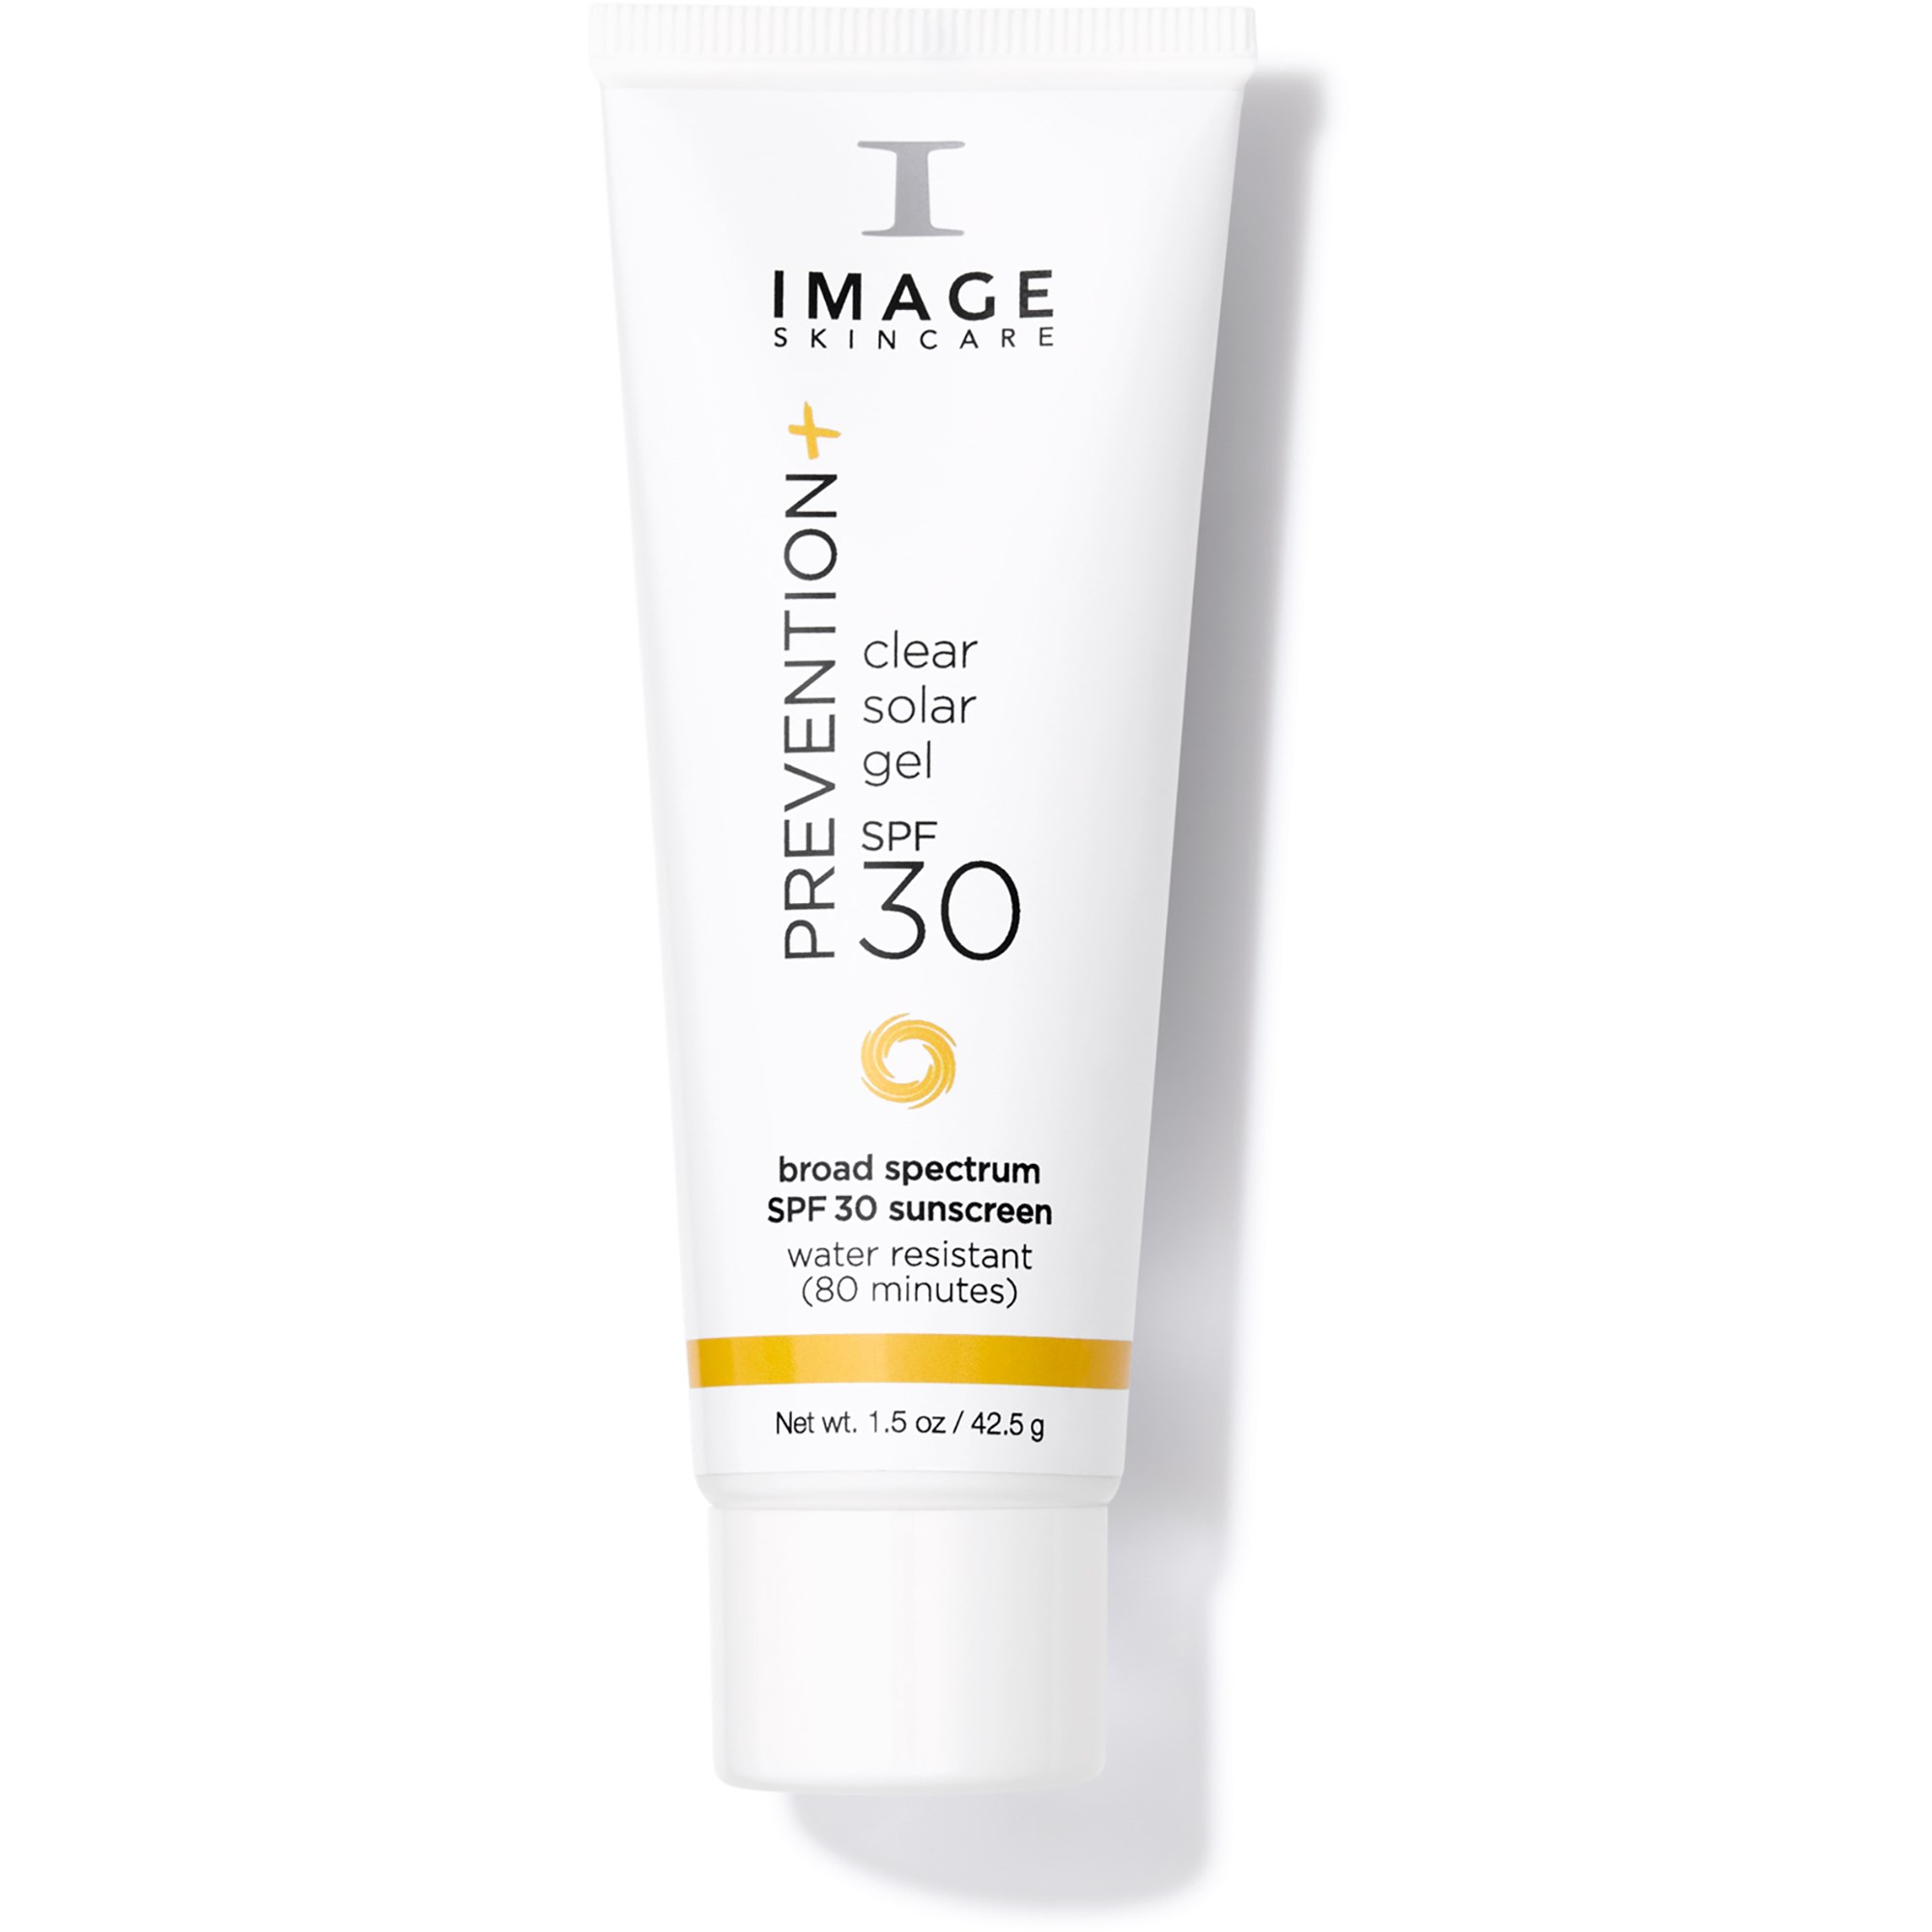 Läs mer om IMAGE Skincare Prevention+ Clear Solar Gel SPF 30 42 g